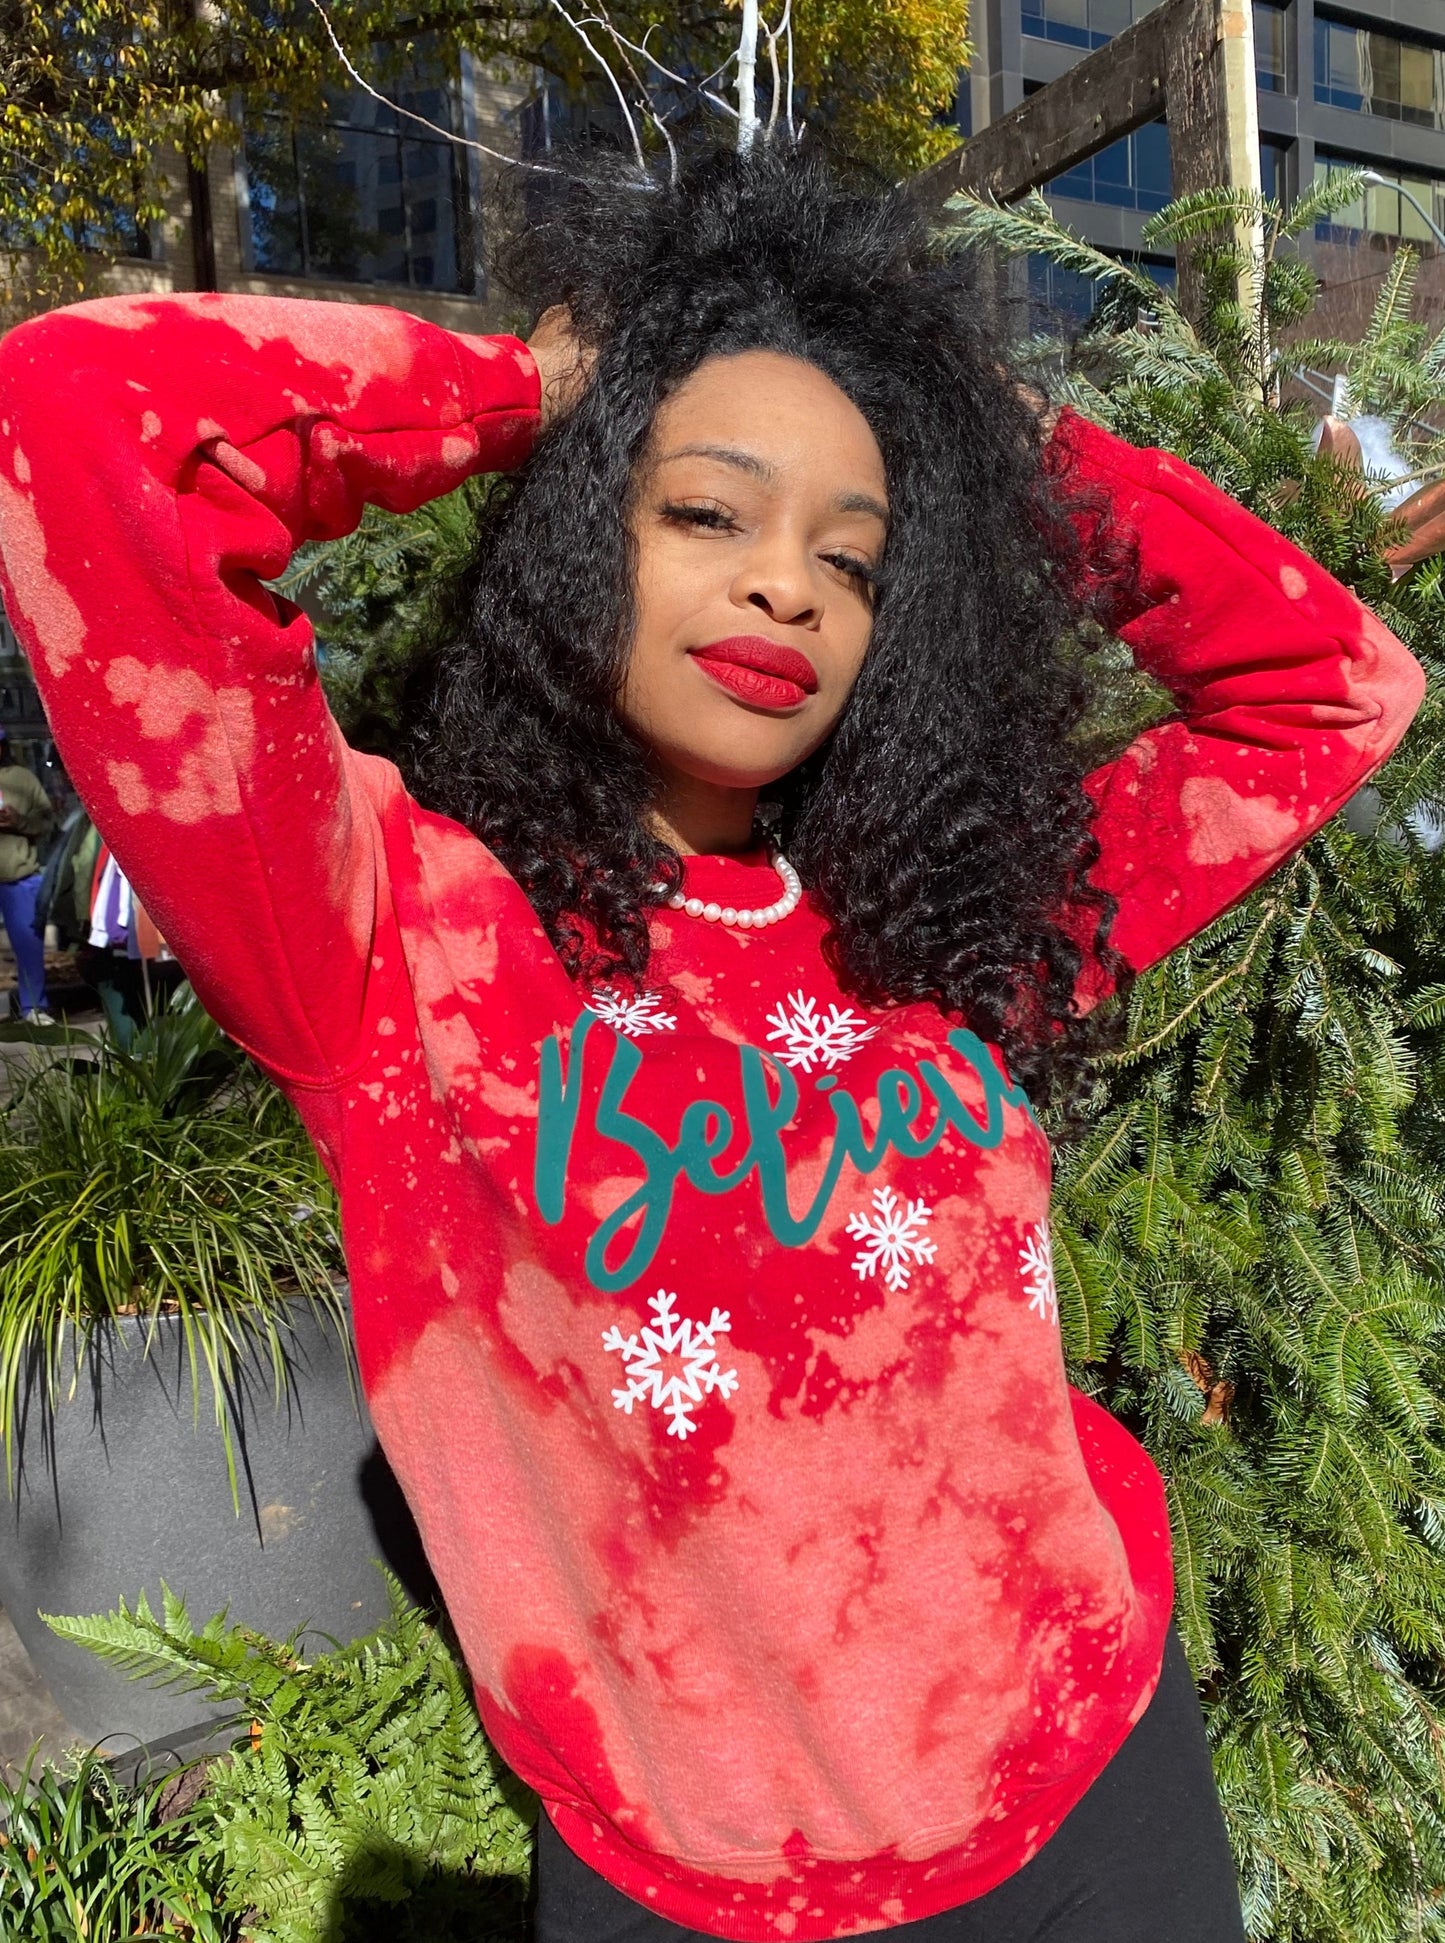 Snowflake Serenade 'Believe' Bleached Holiday Sweatshirt